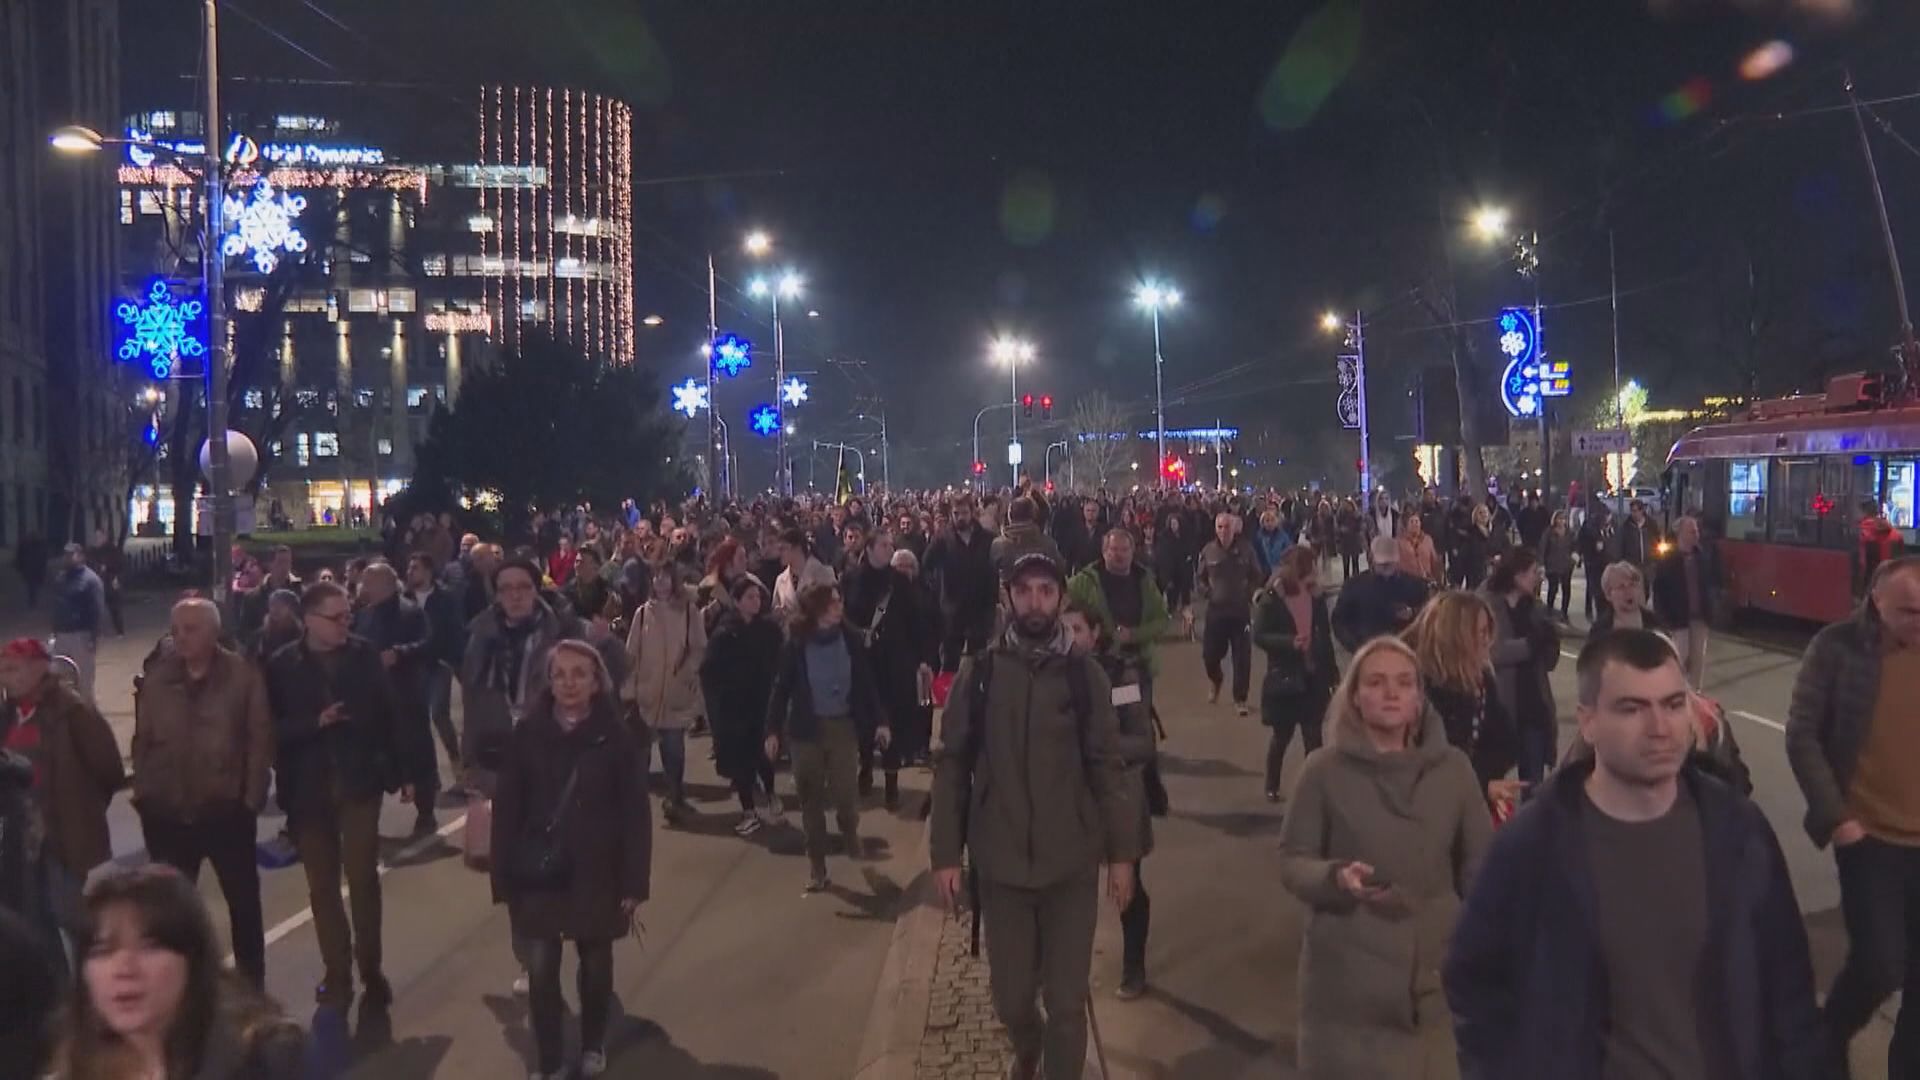 塞爾維亞續有示威抗議選舉舞弊 俄羅斯指西方國家是騷亂幕後黑手